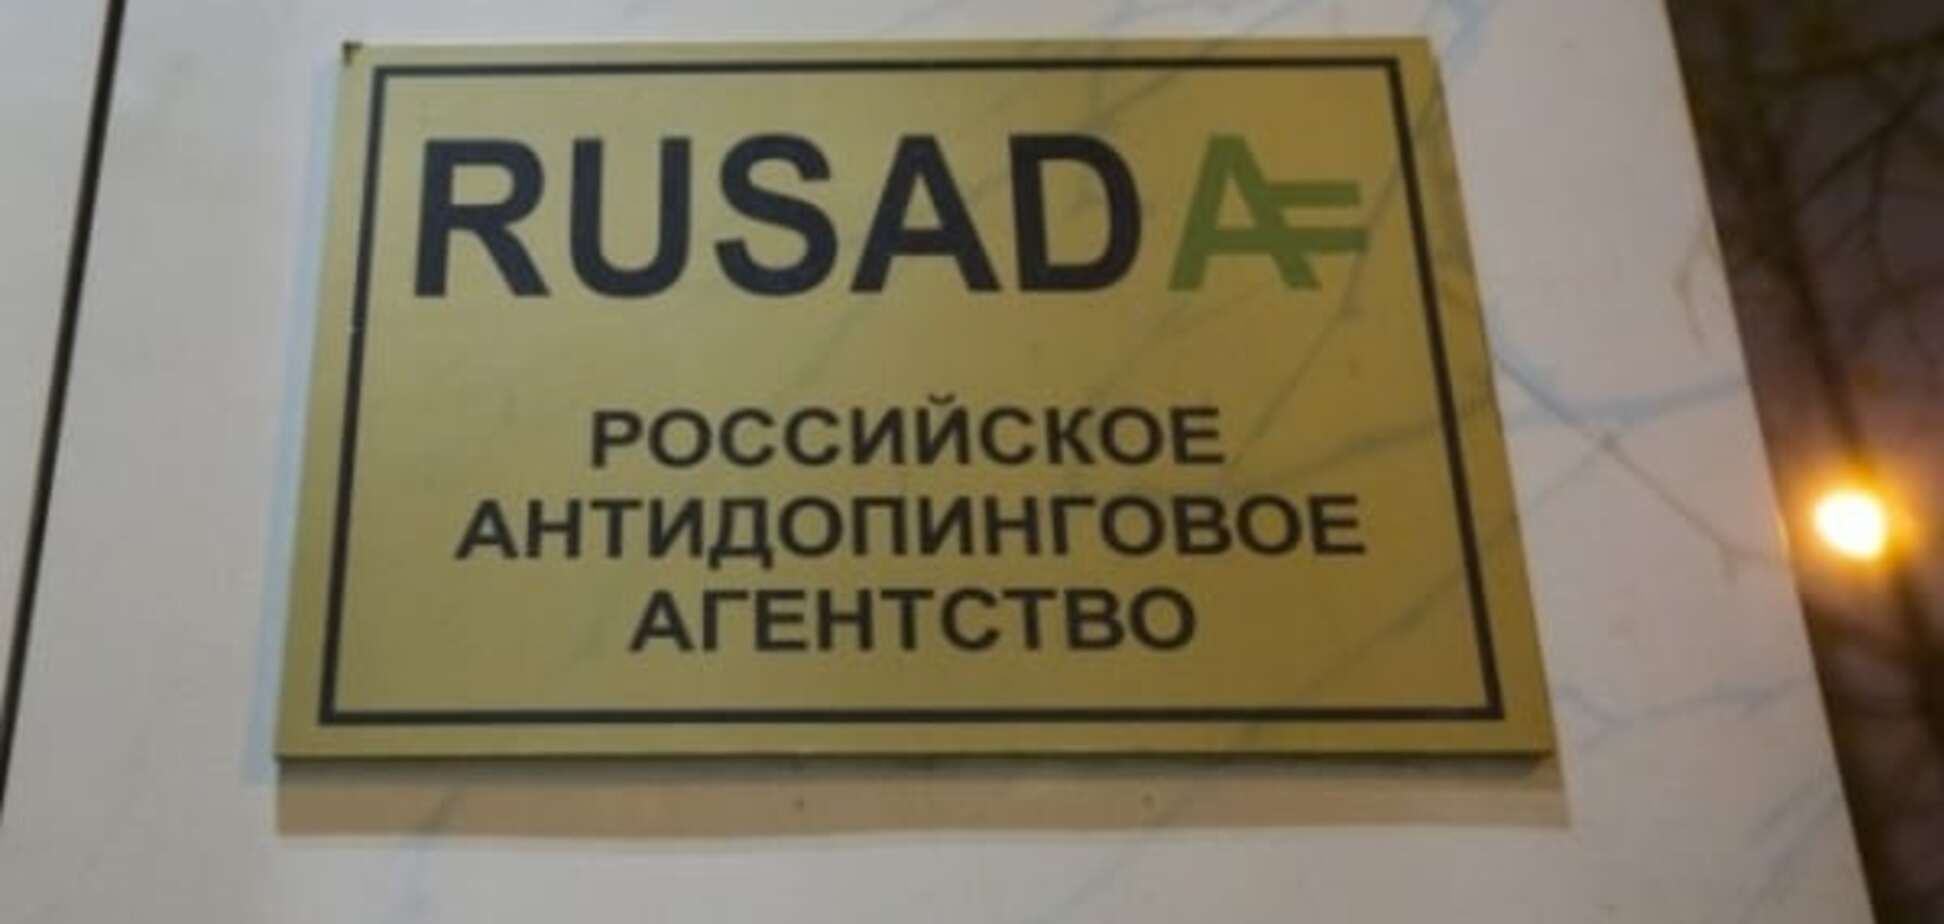 Антидопинговое агентство России официально признано незаконным. Украина под подозрением